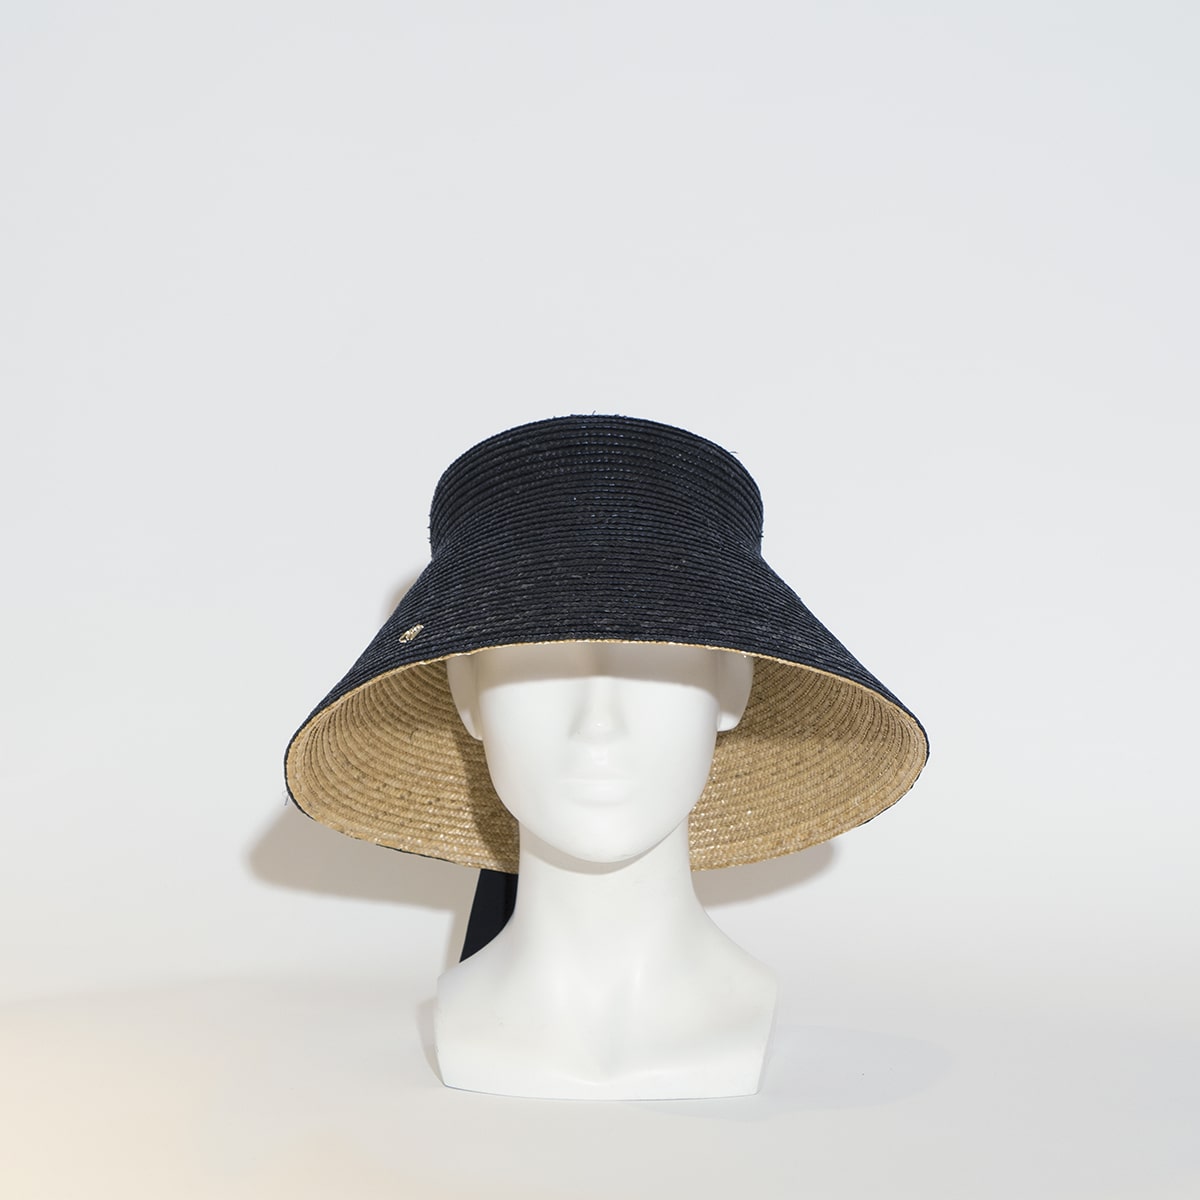 Découvrez notre chapeau capri en paille double bi colore, imaginé et conçu par la modiste italienne Veronica Marucci. D